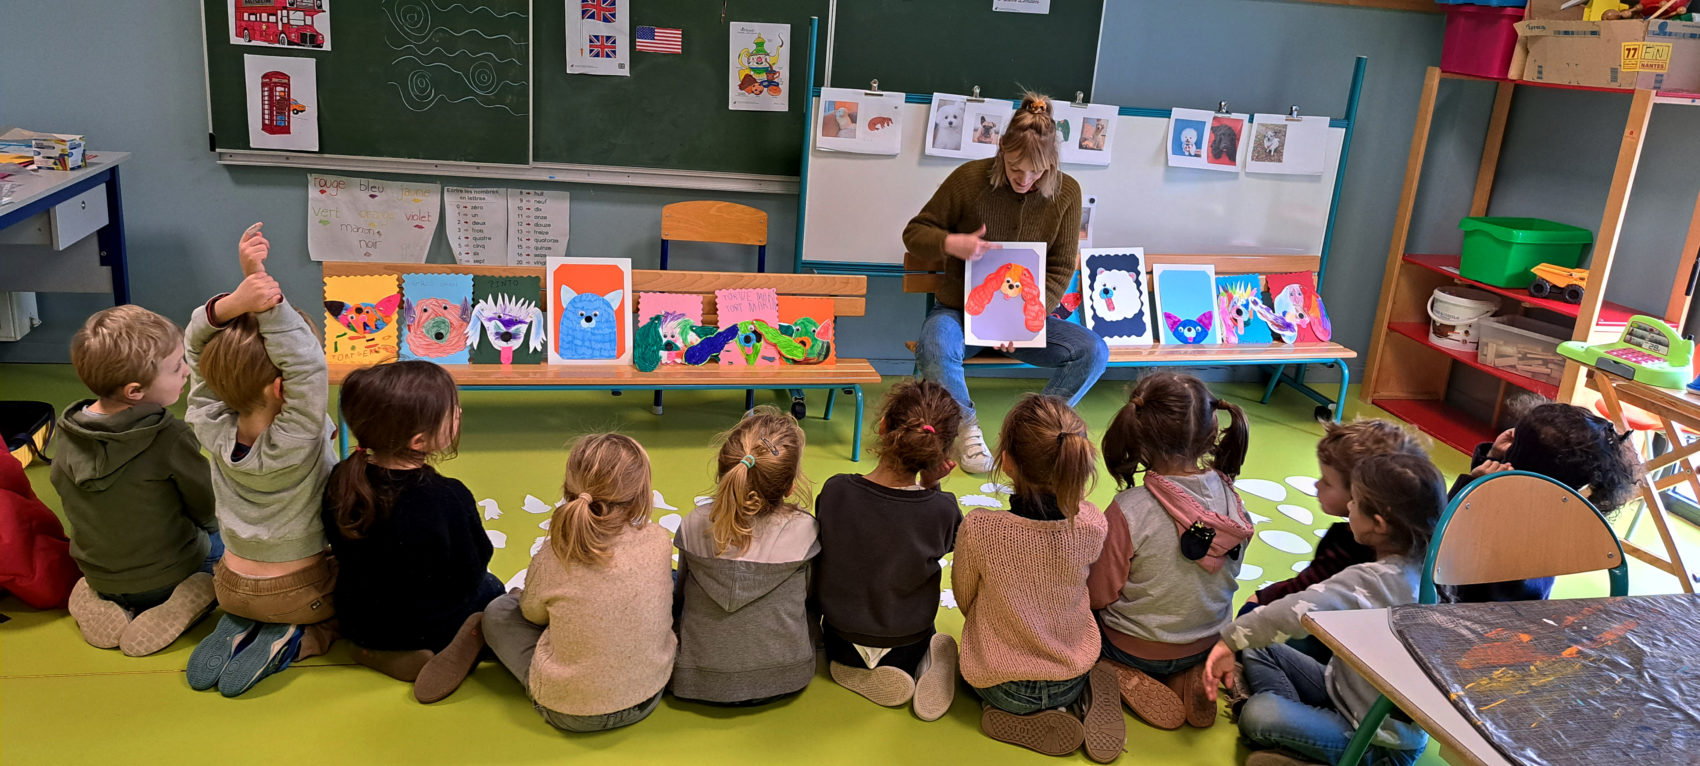 En classe les enfants sont assis de dos devant une femme qui leur présente un dessin de chien